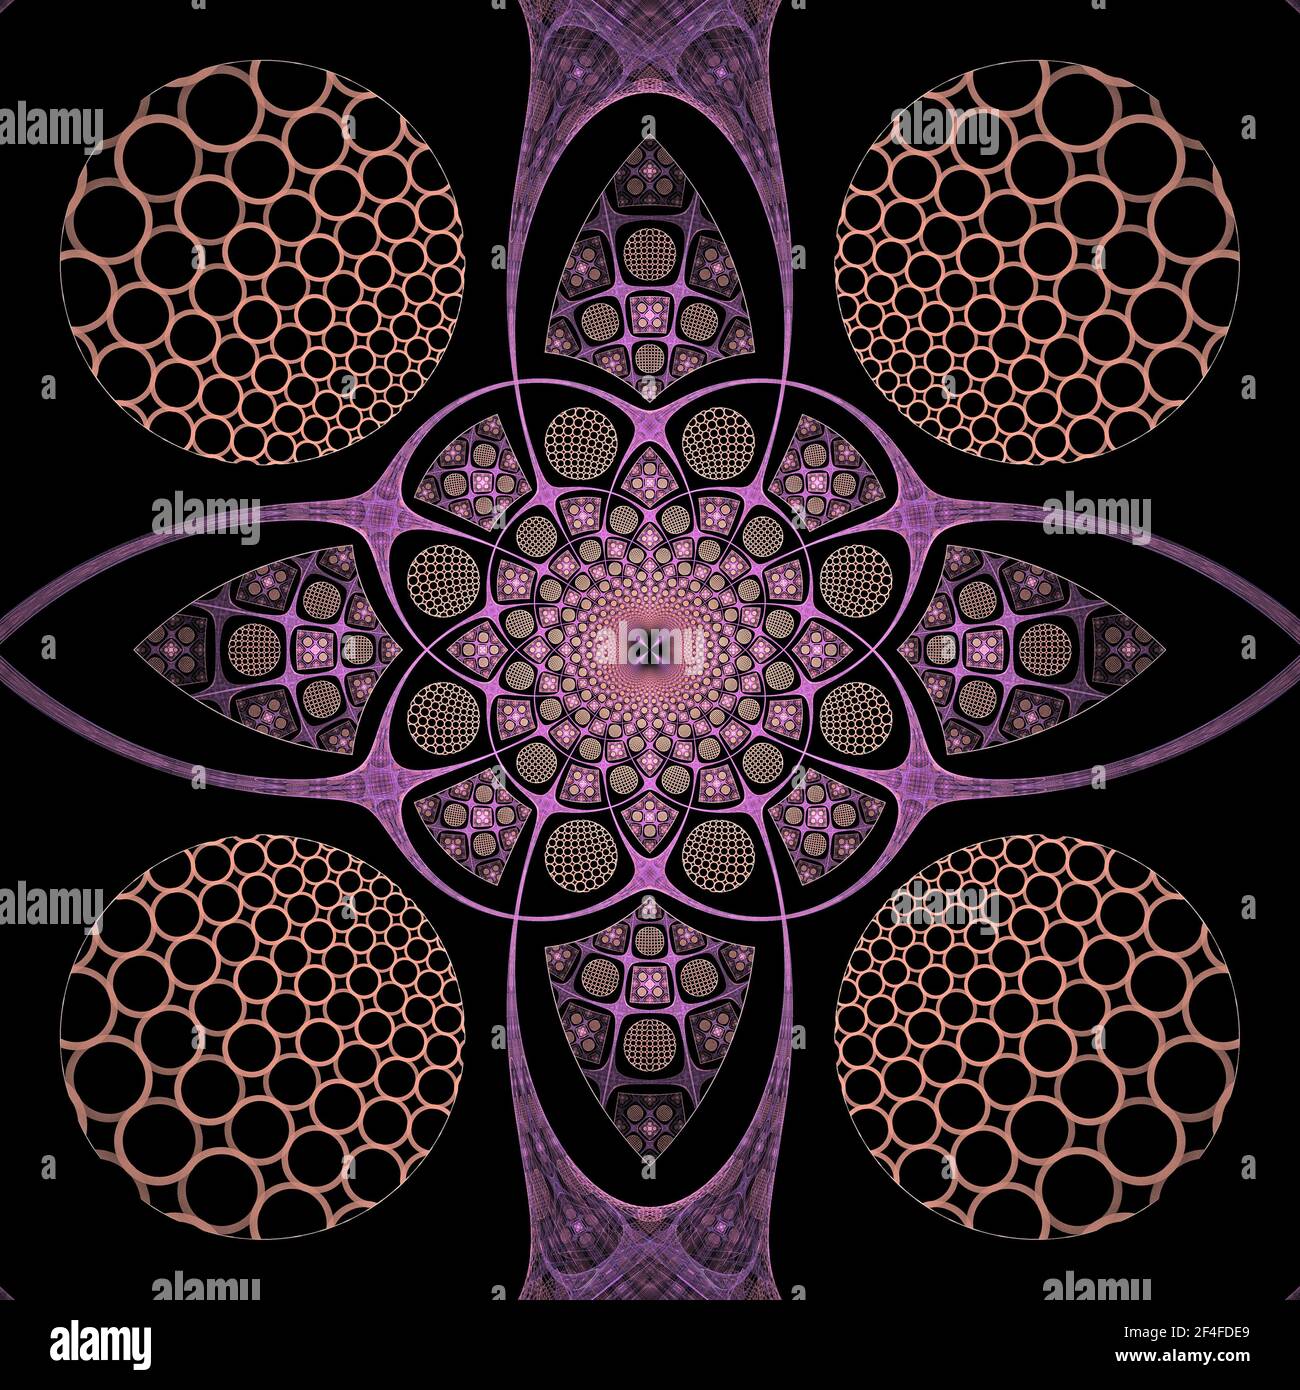 Fraktale Geometrie - Flammenfraktale Konstruktion Stockfoto